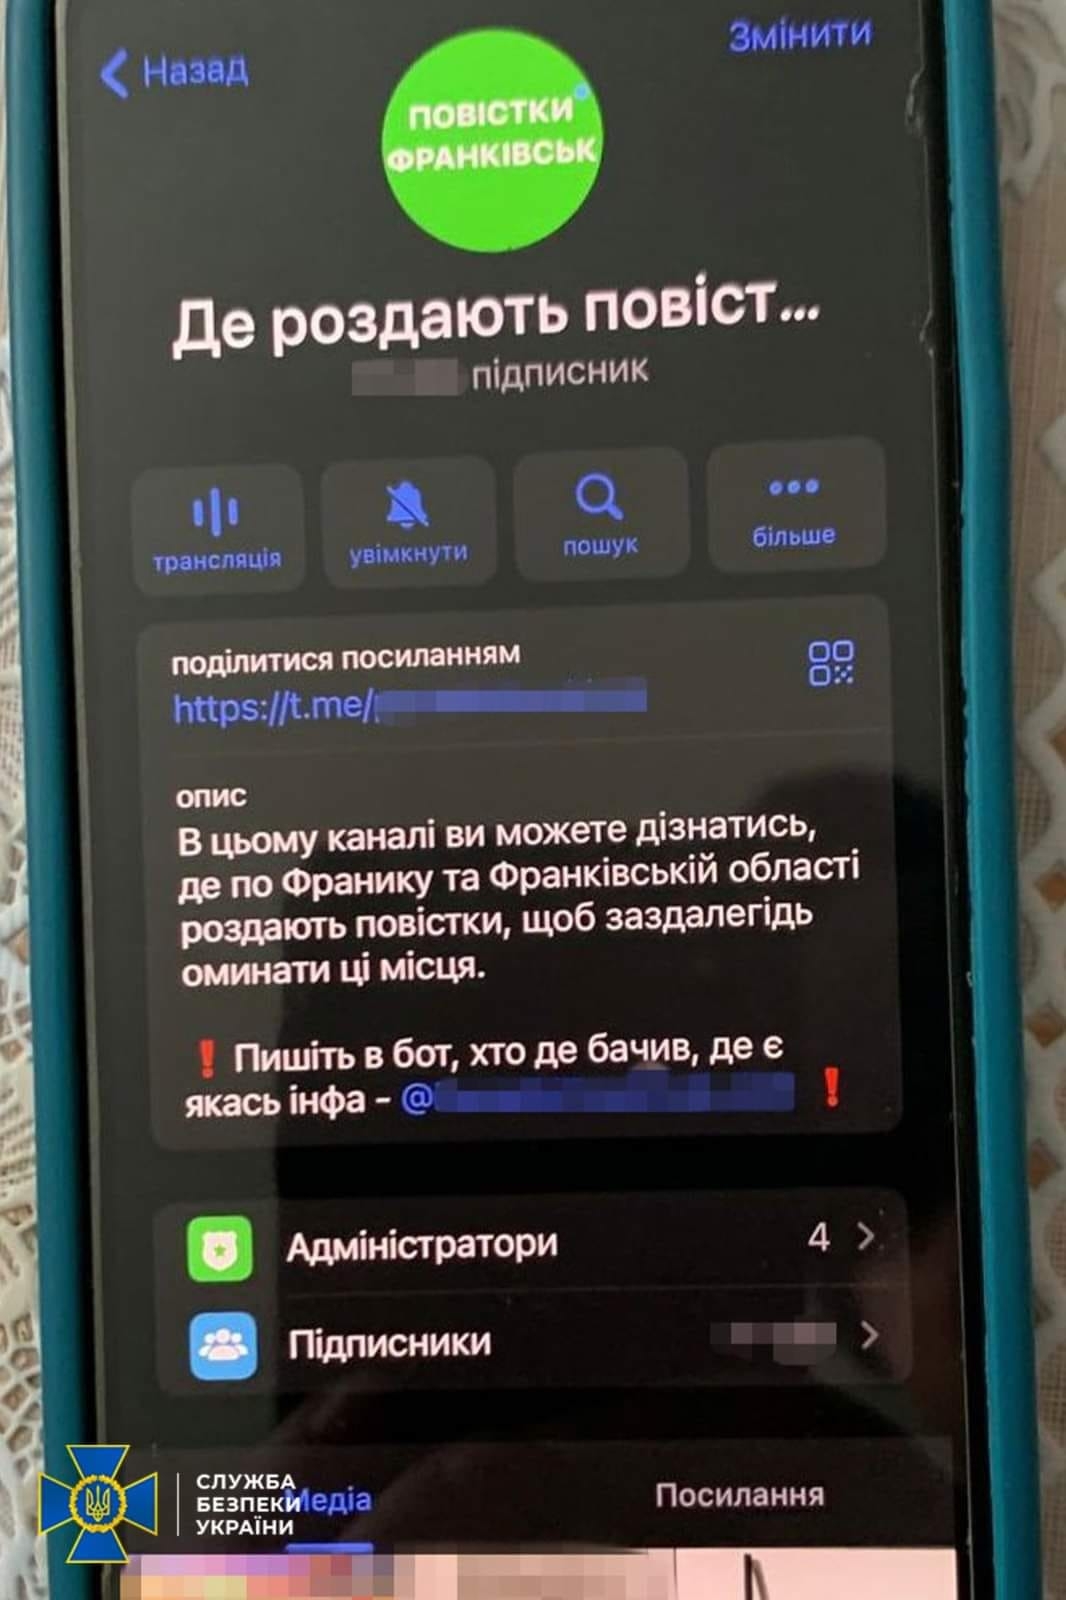 "Де роздають повістки": СБУ заблокувала Telegram-канали у Вінниці та інших містах